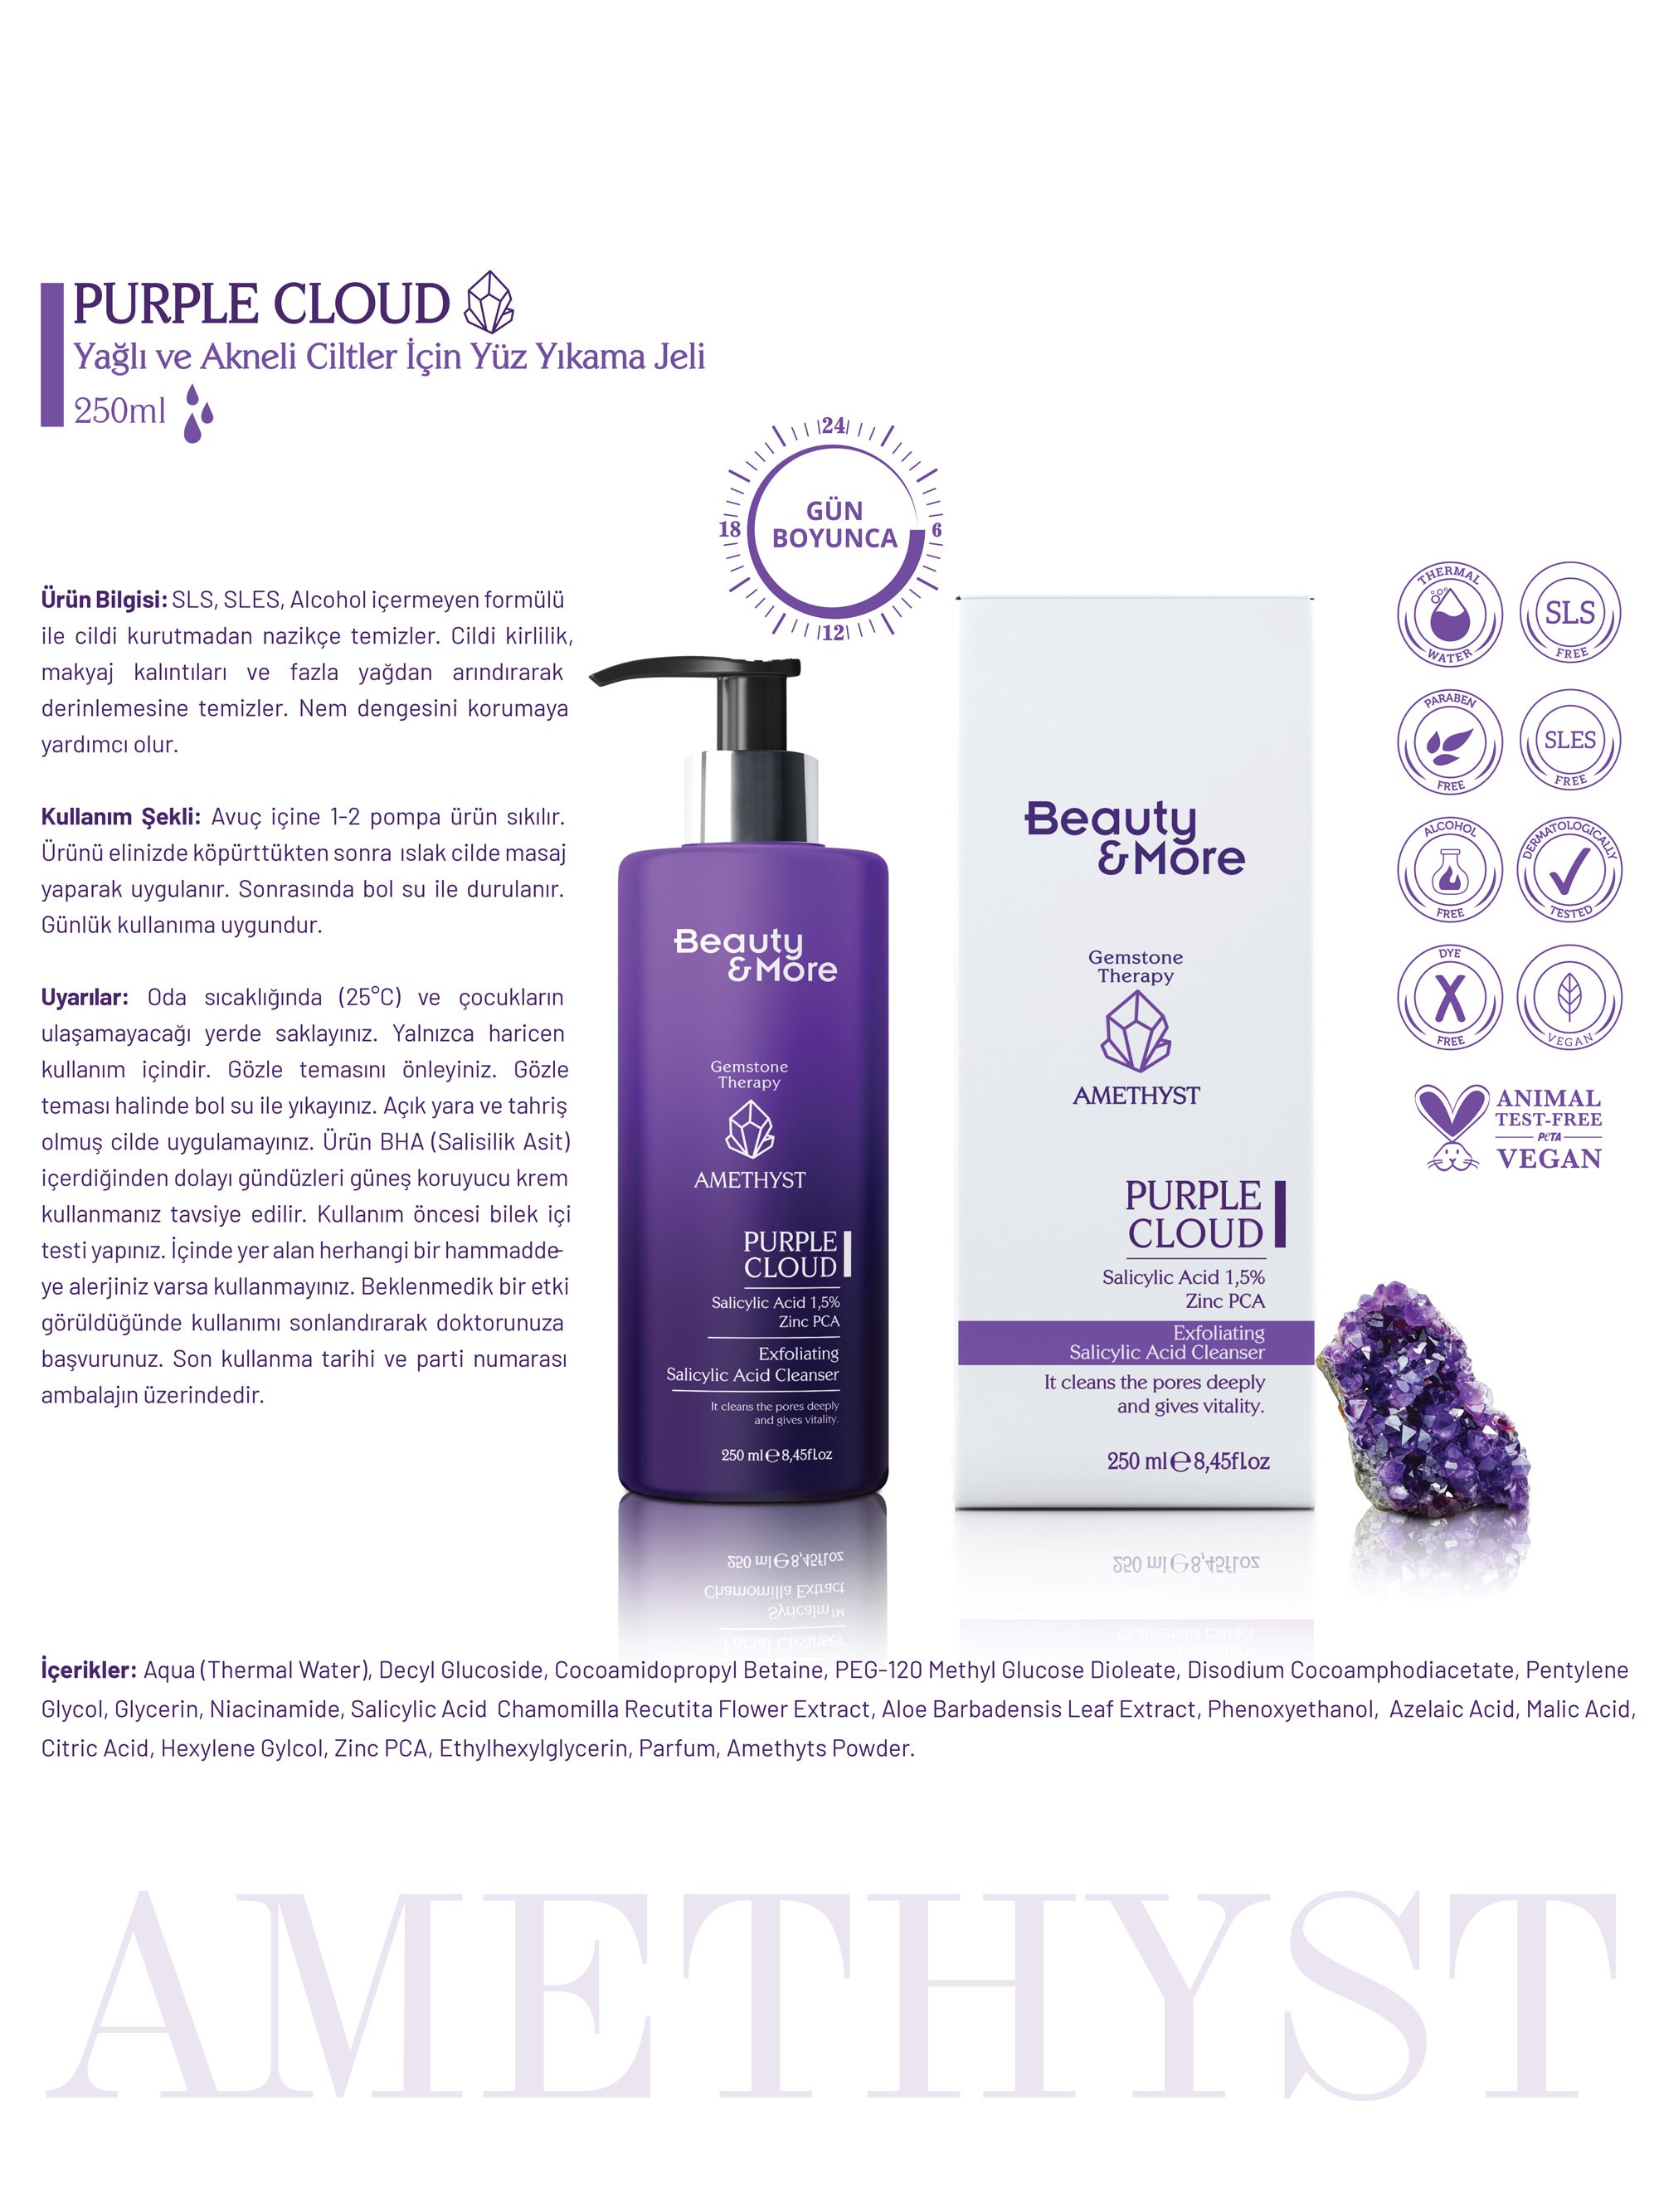 Beauty&More Ametist Purple Cloud Yağlı ve Akneli Ciltler İçin Yüz Yıkama Jeli 250 ml